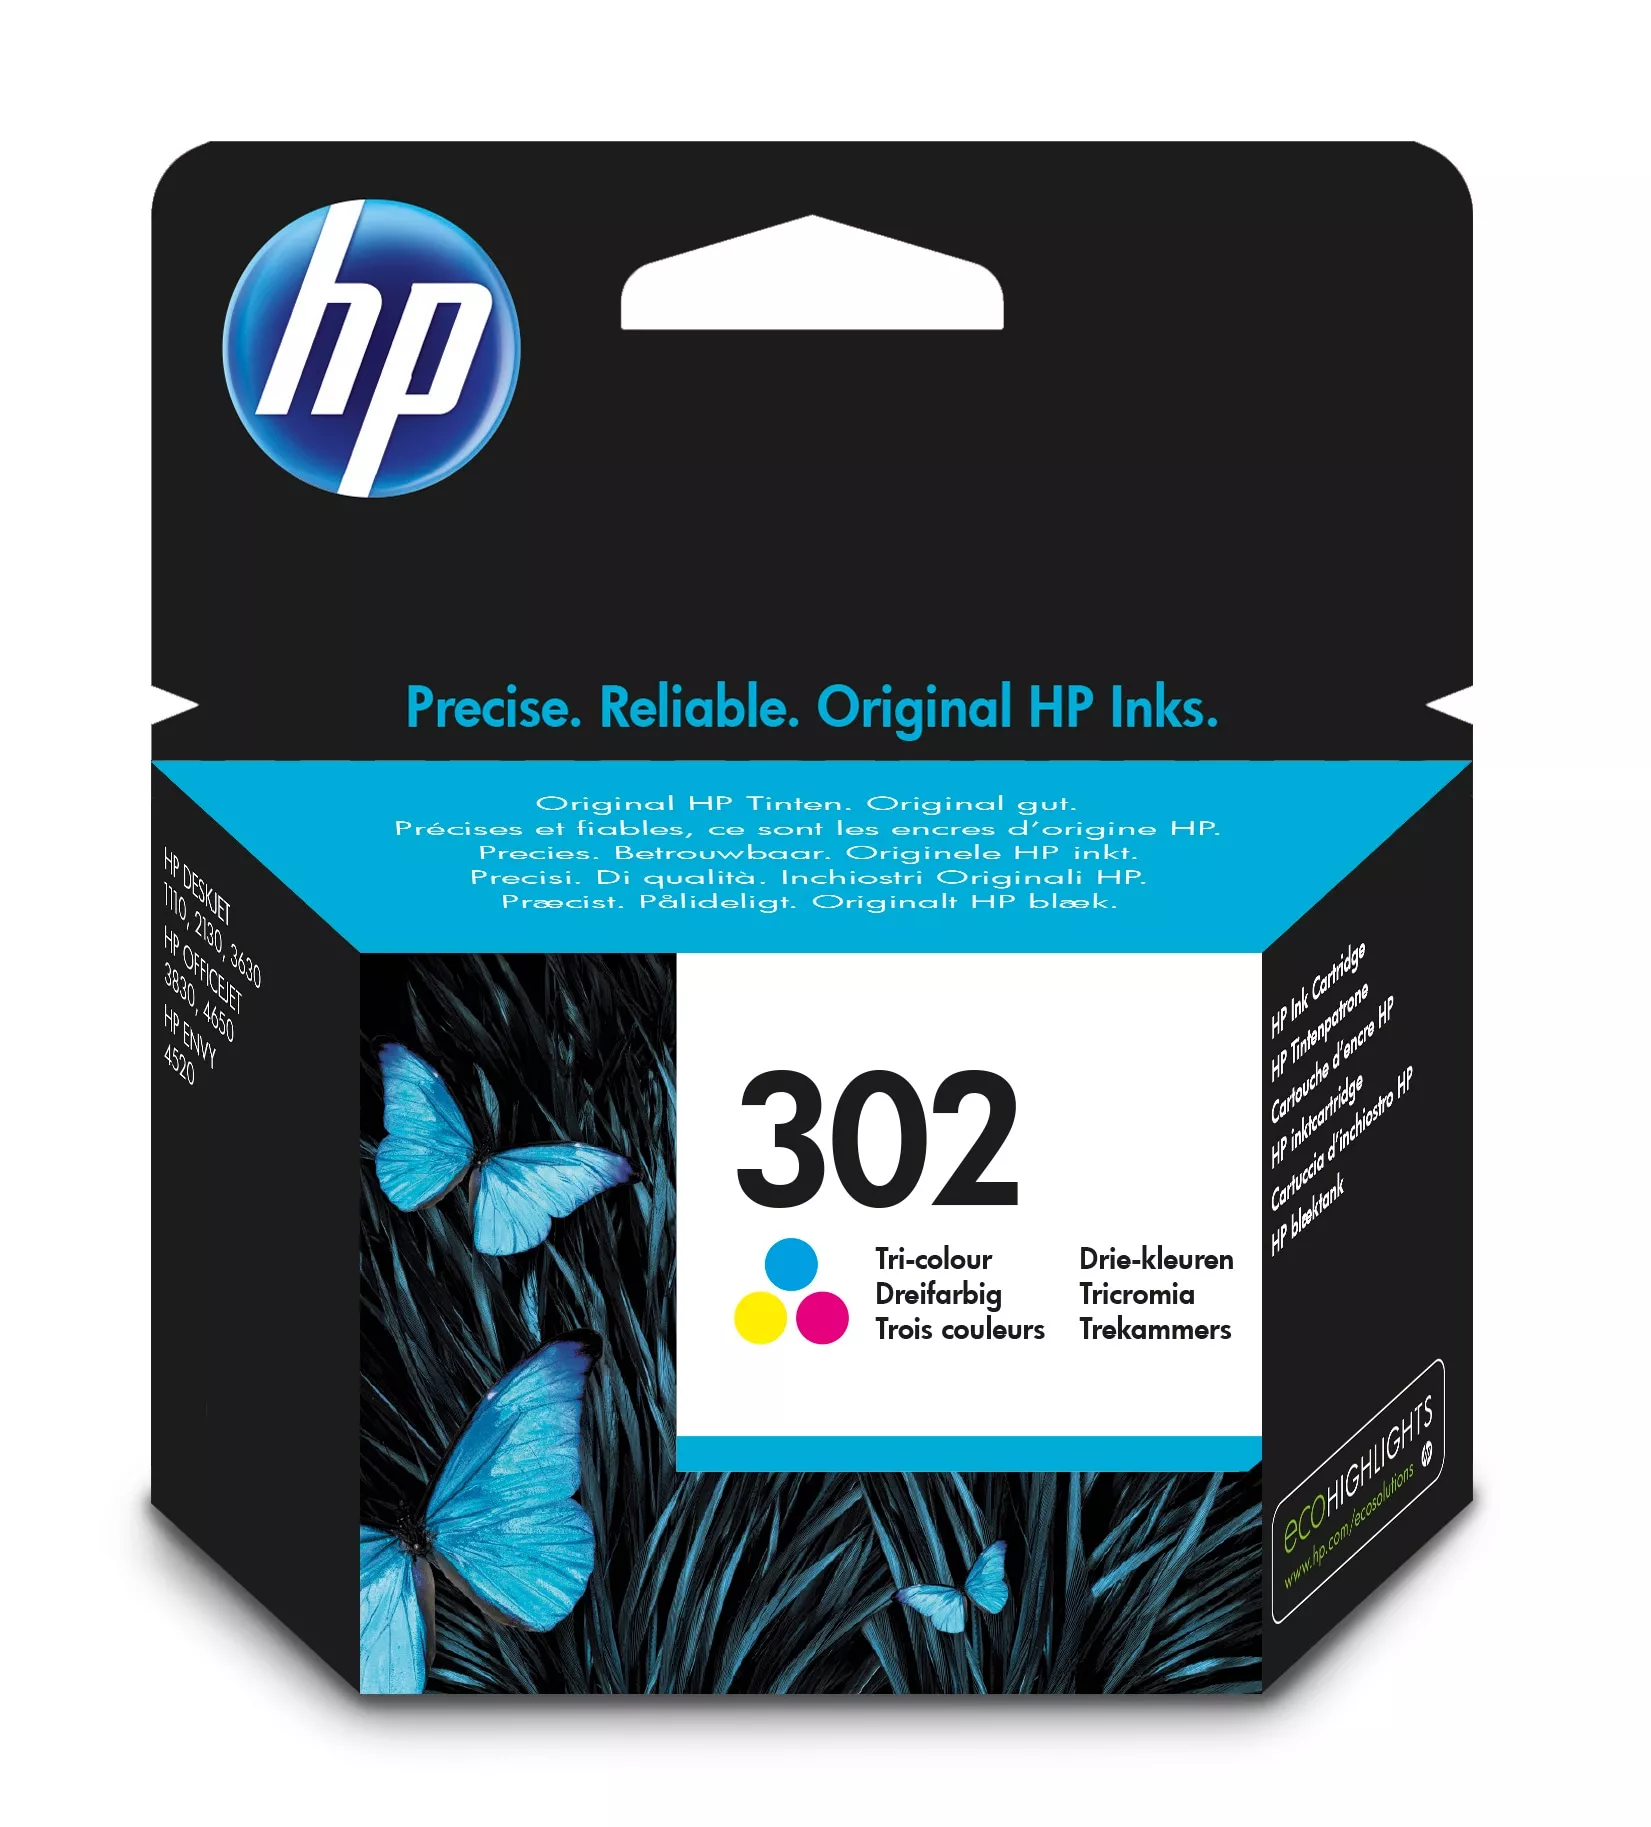 Achat HP 302 original Ink cartridge F6U65AE UUS Tri-color au meilleur prix